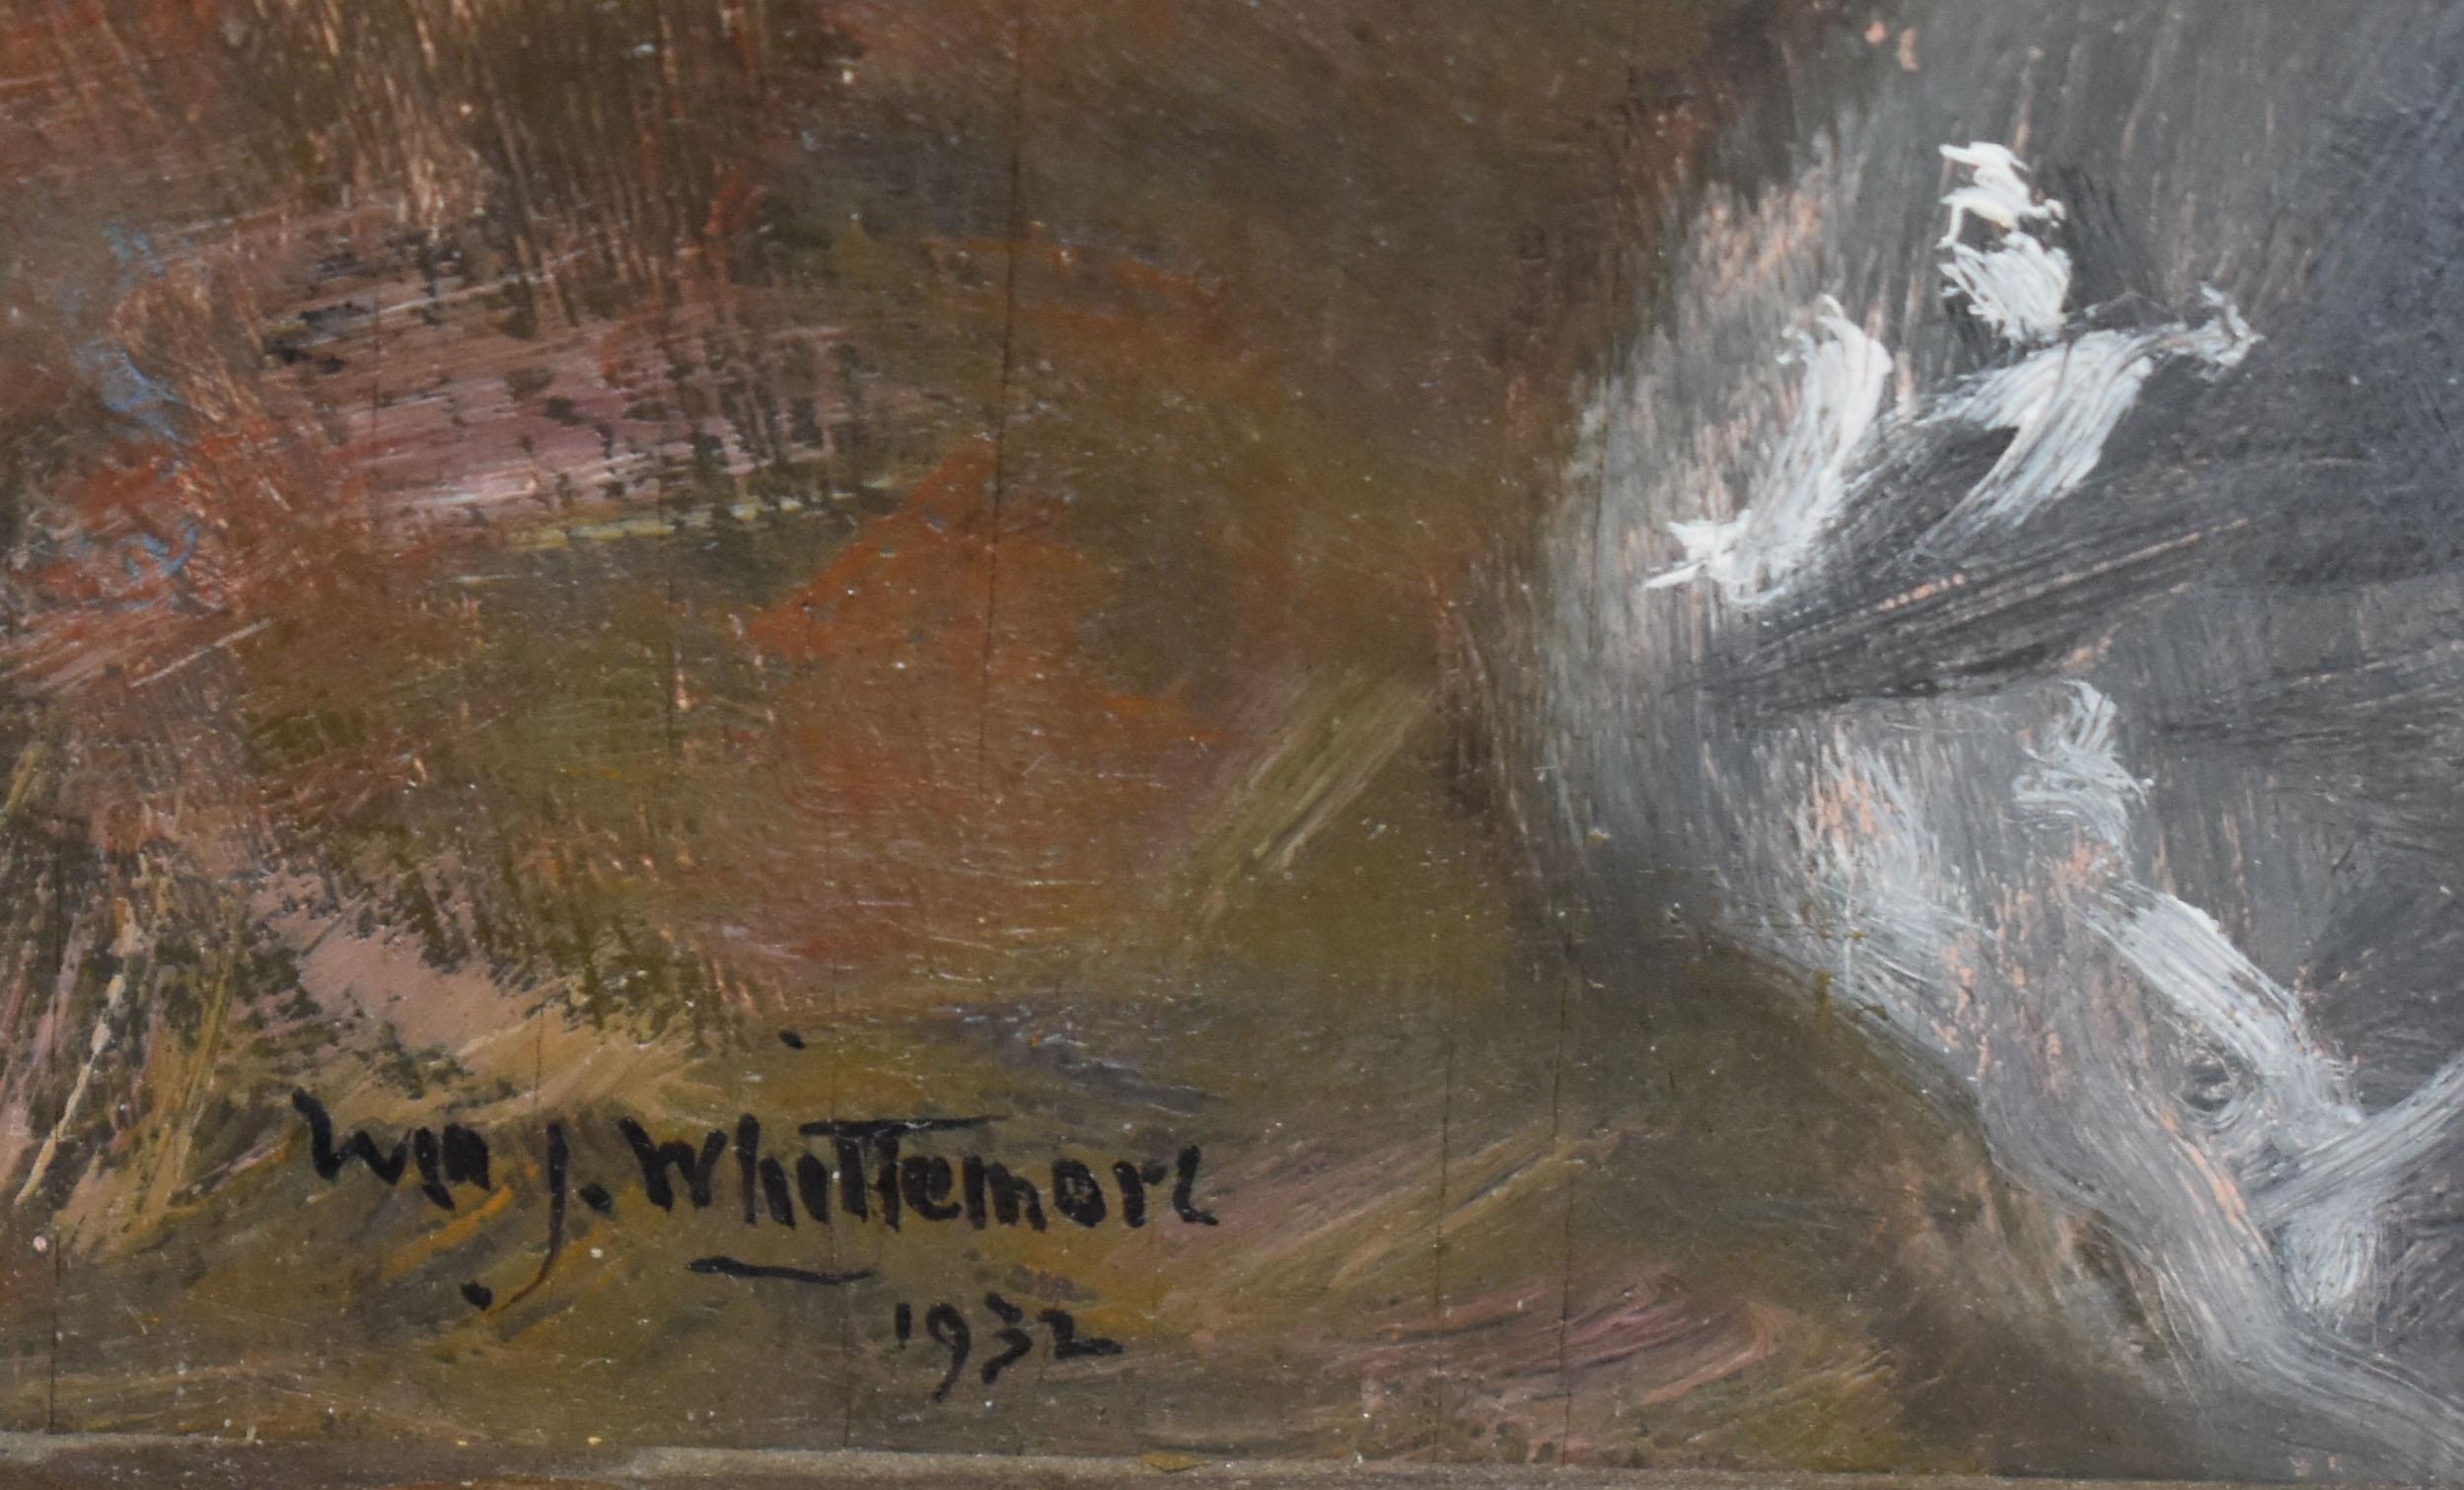 Vieille peinture impressionniste américaine de nature morte signée par William John Whittemore  (1860 - 1955).  Huile sur carton, vers 1932. Signé.  Présenté dans un cadre d'époque. Taille de l'image, 9,5 